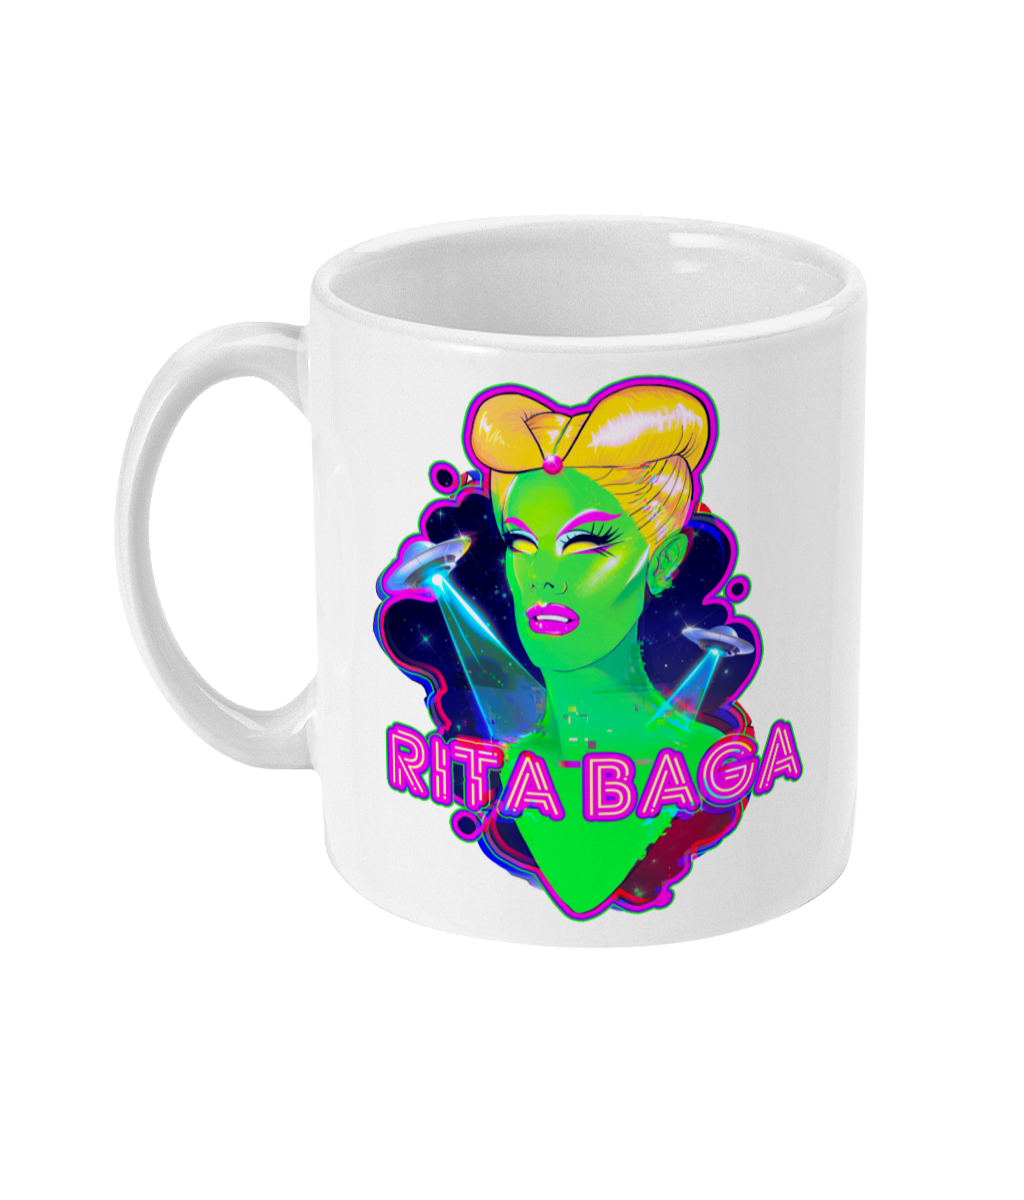 Rita Baga - Alien Mug